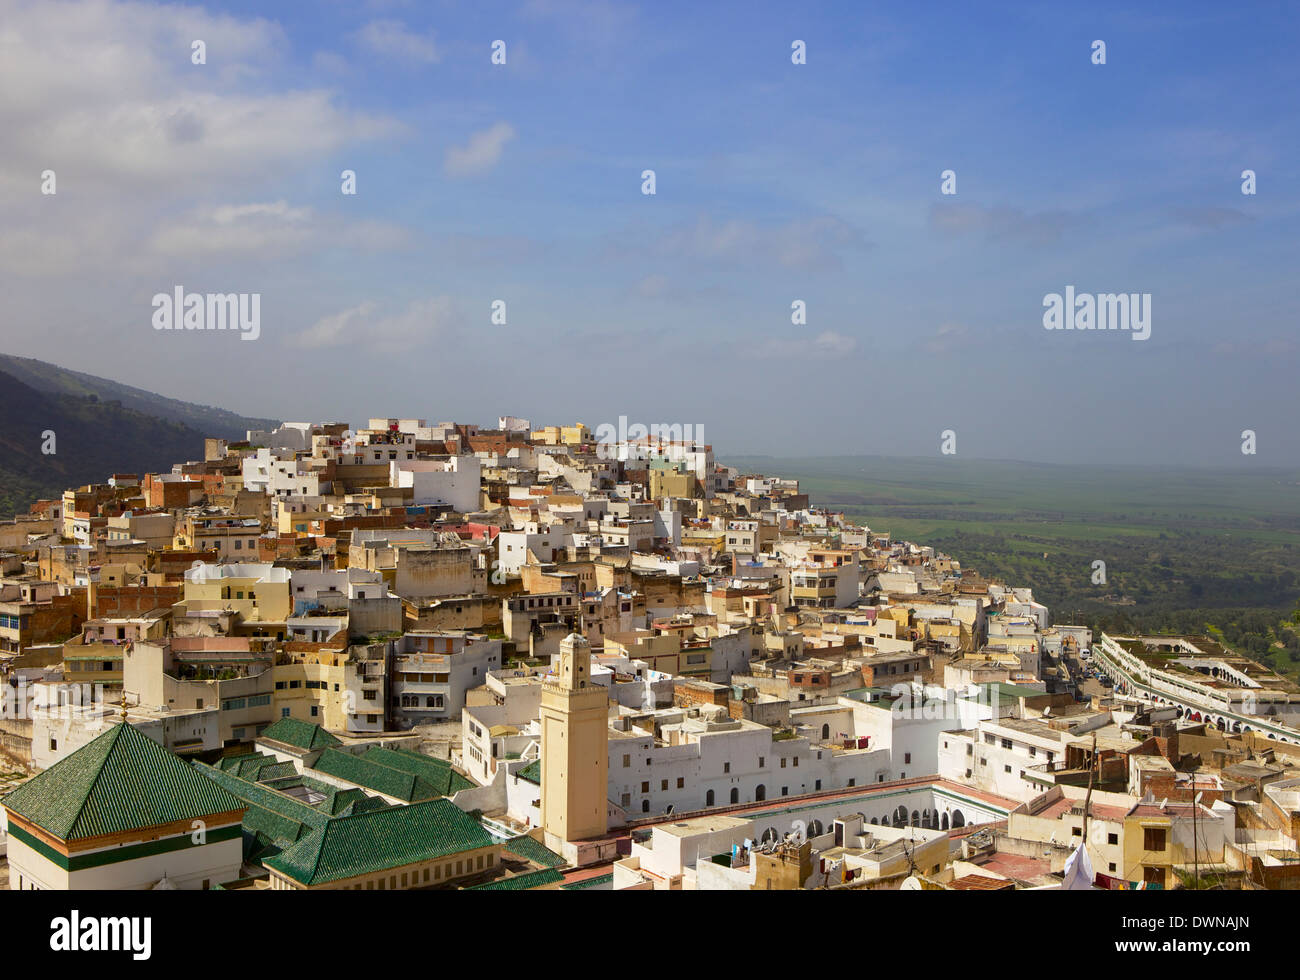 Vista aérea de los tejados de la ciudad sagrada de Moulay Idriss, incluyendo Záwiya de Moulay Idriss, Marruecos, África Foto de stock